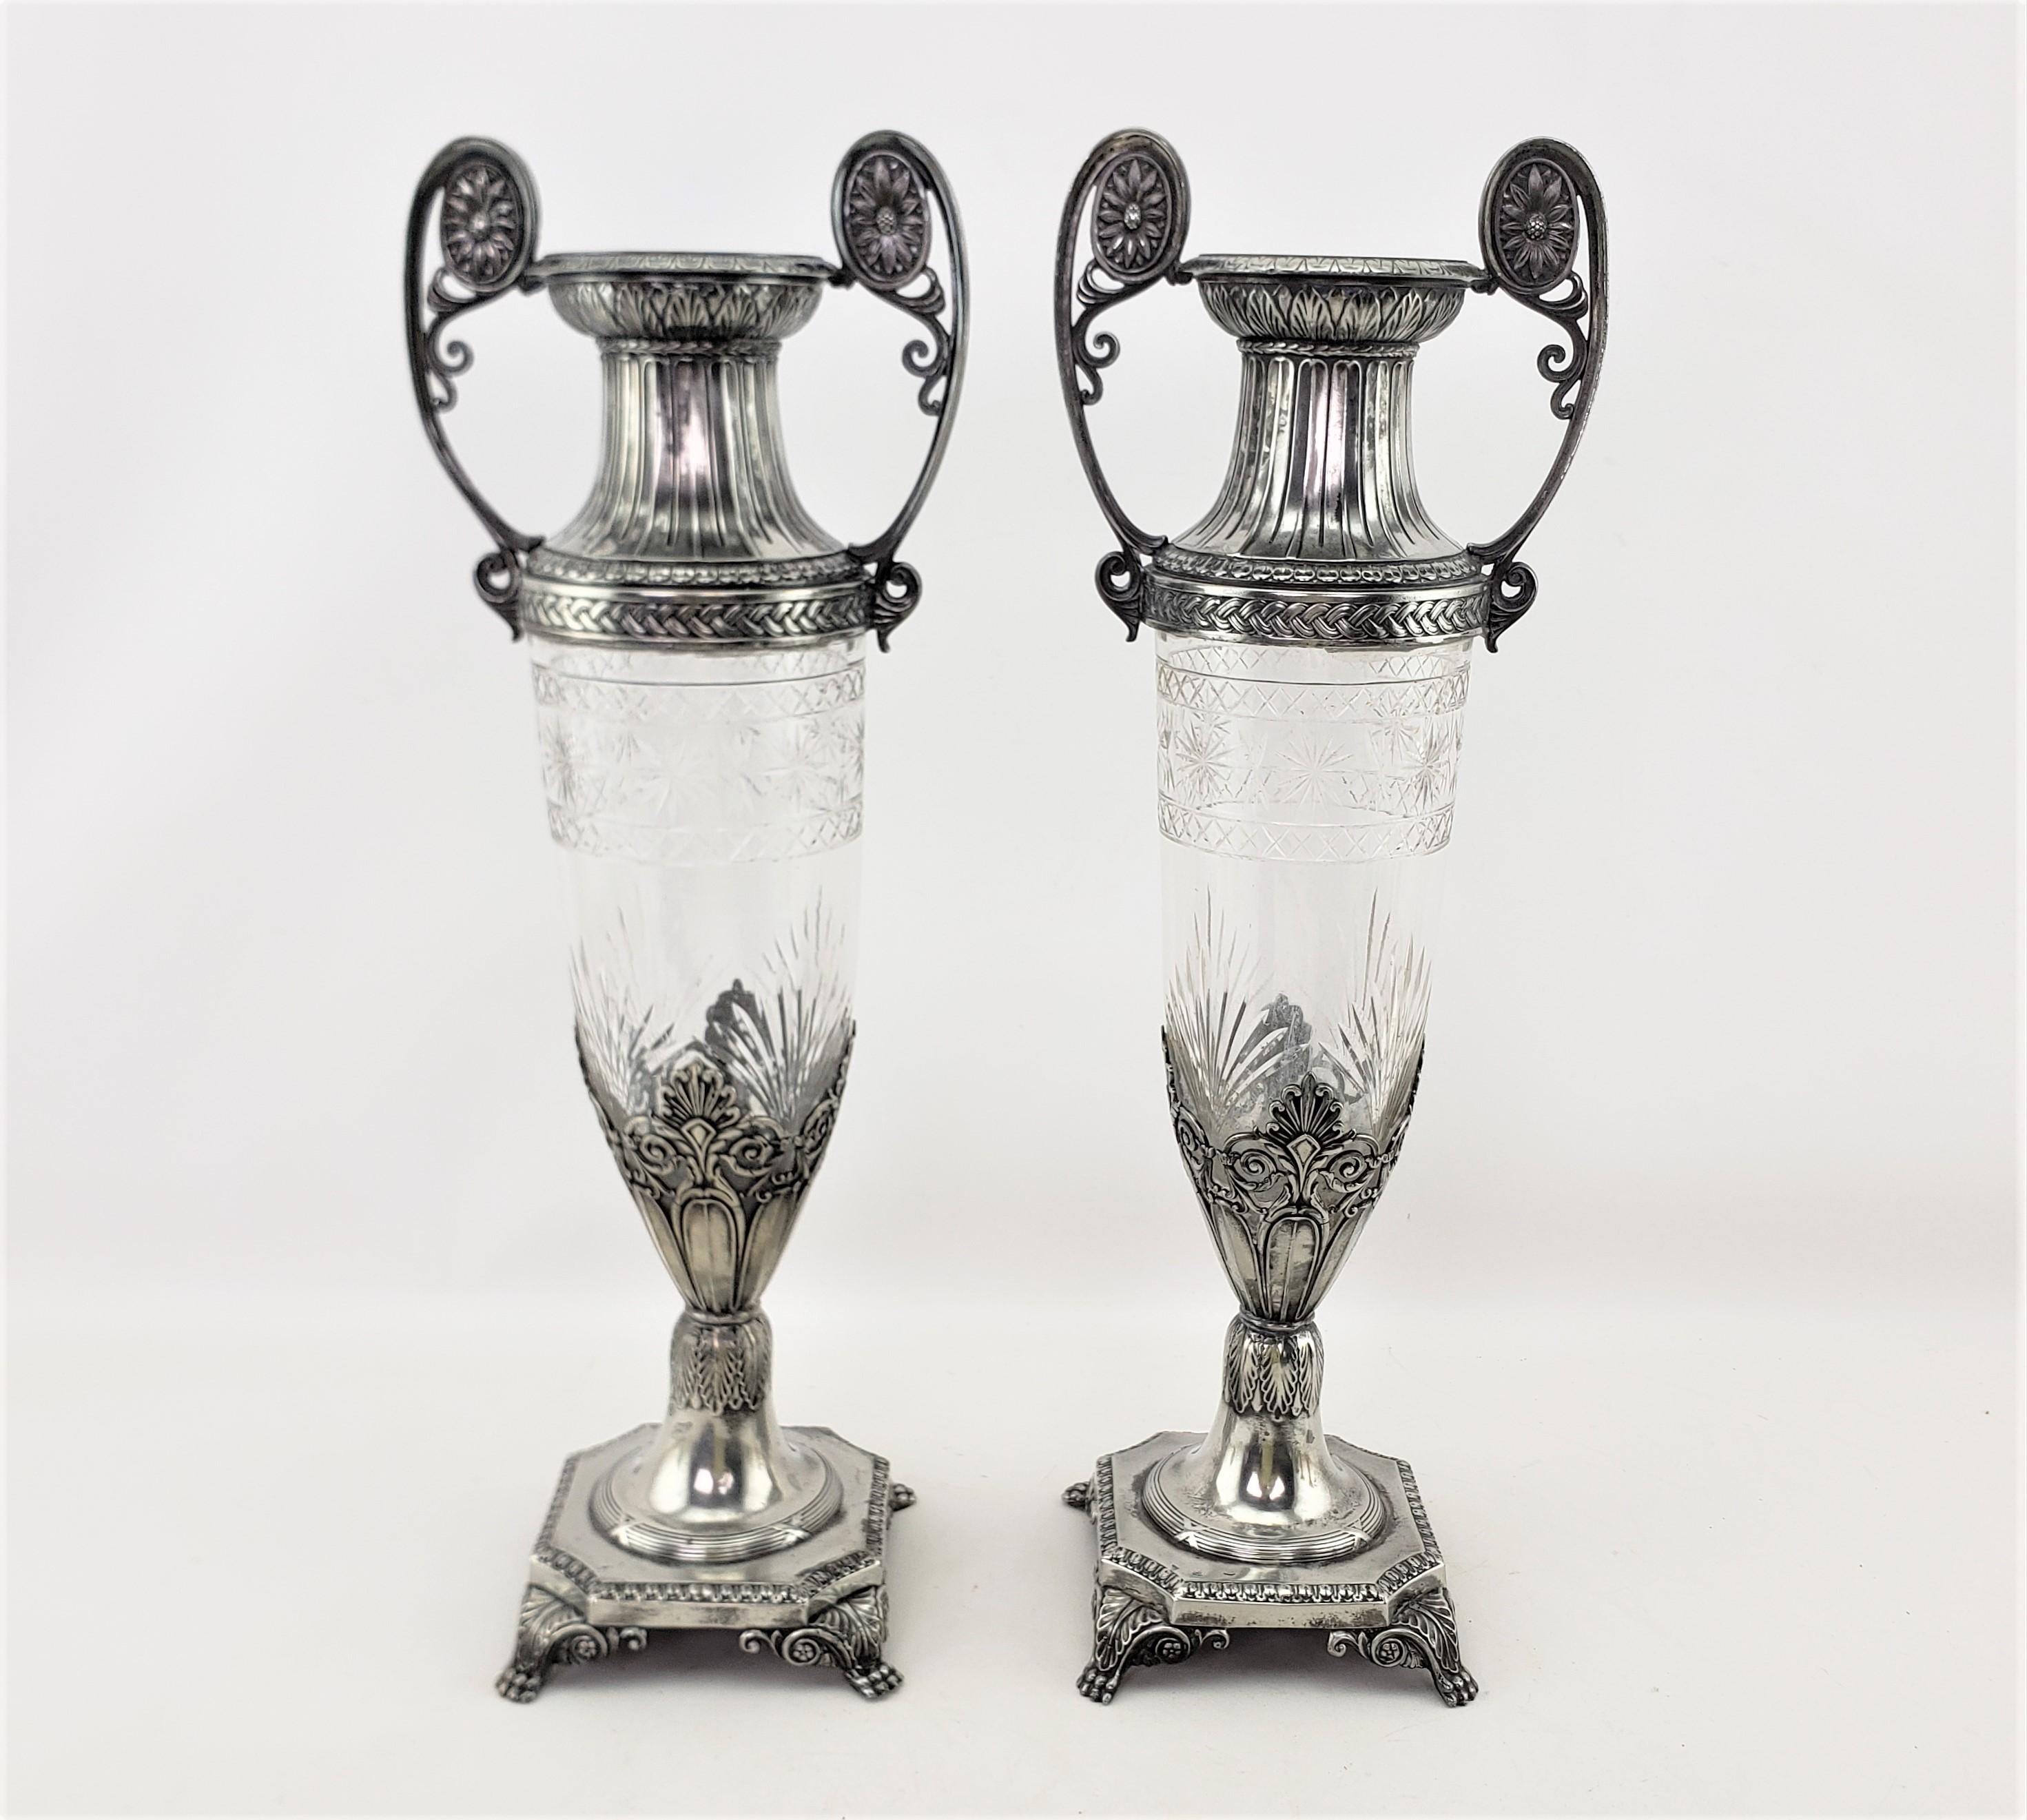 Dieses Paar antiker Vasen wurde um 1900 von der bekannten deutschen Firma WMF im Stil der Secessionisten hergestellt. Die Vasen haben einen konisch zulaufenden, geschliffenen Kristallkorpus mit verzierten, versilberten Beschlägen, die den oberen